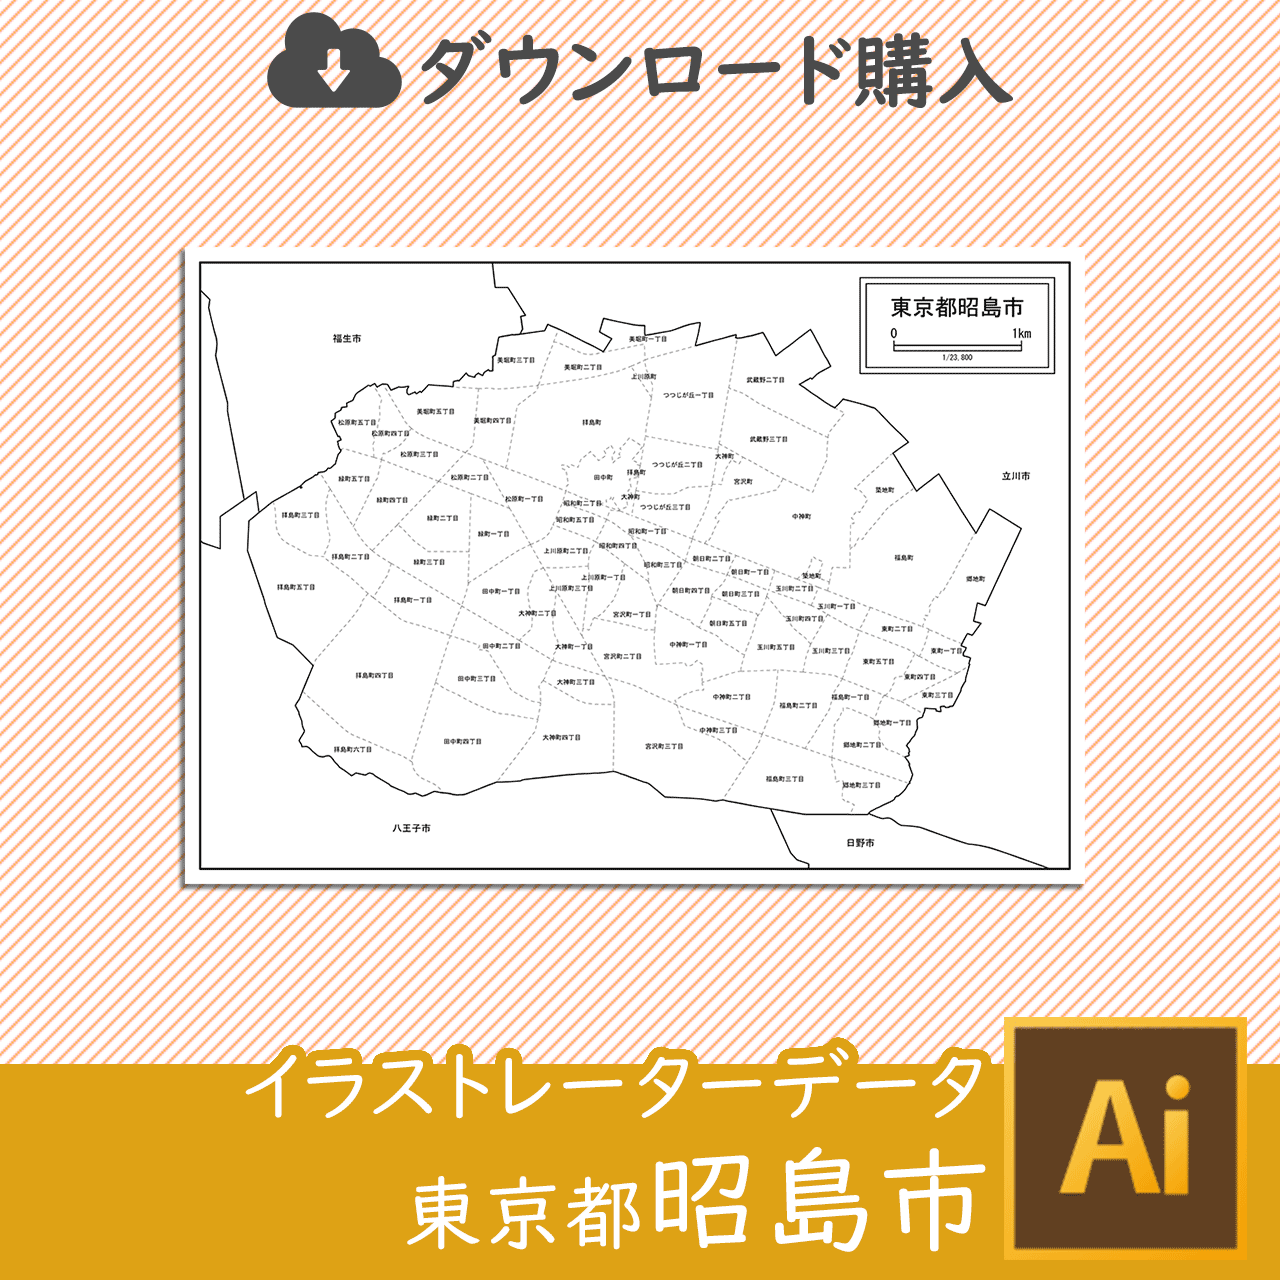 昭島市のaiデータのサムネイル画像